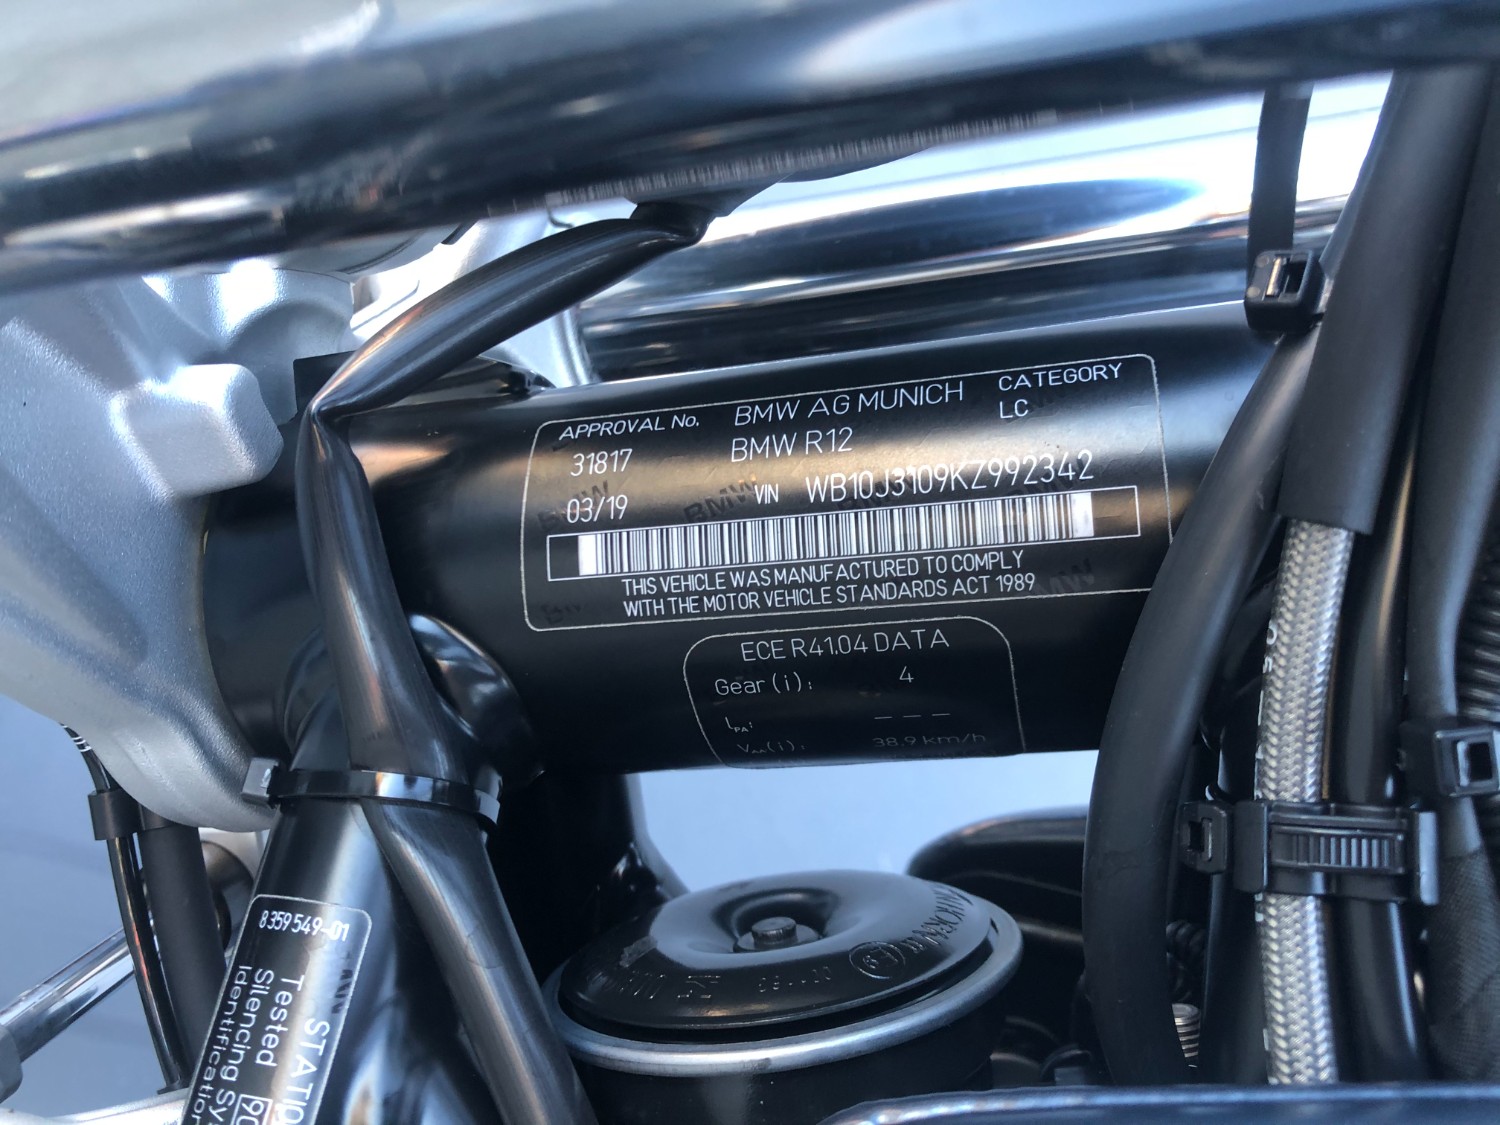 2019 BMW R NINE T SCRAMBLER Motorcycle Image 11